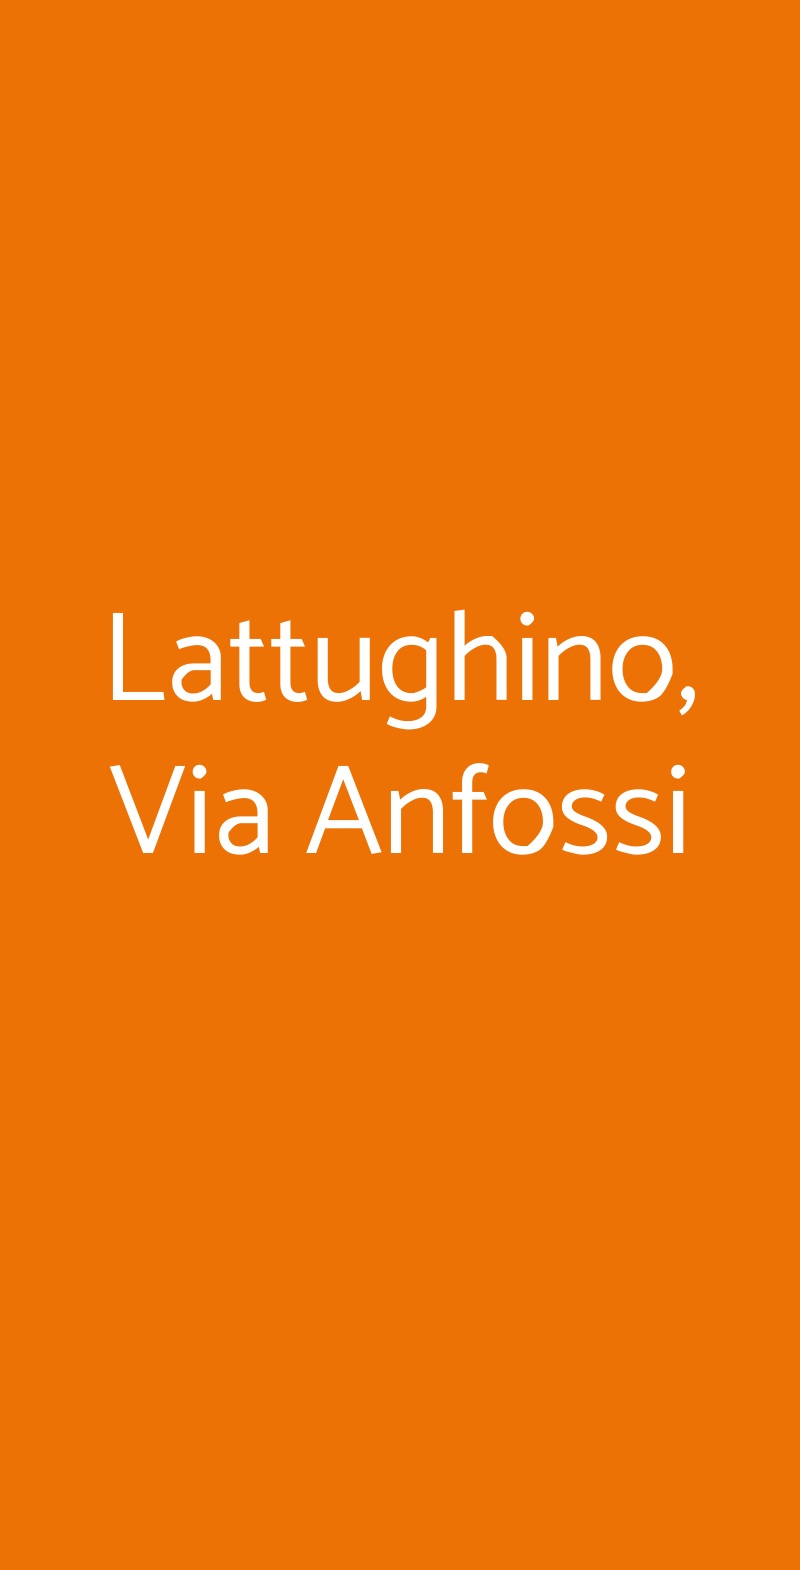 Lattughino, Via Anfossi Milano menù 1 pagina